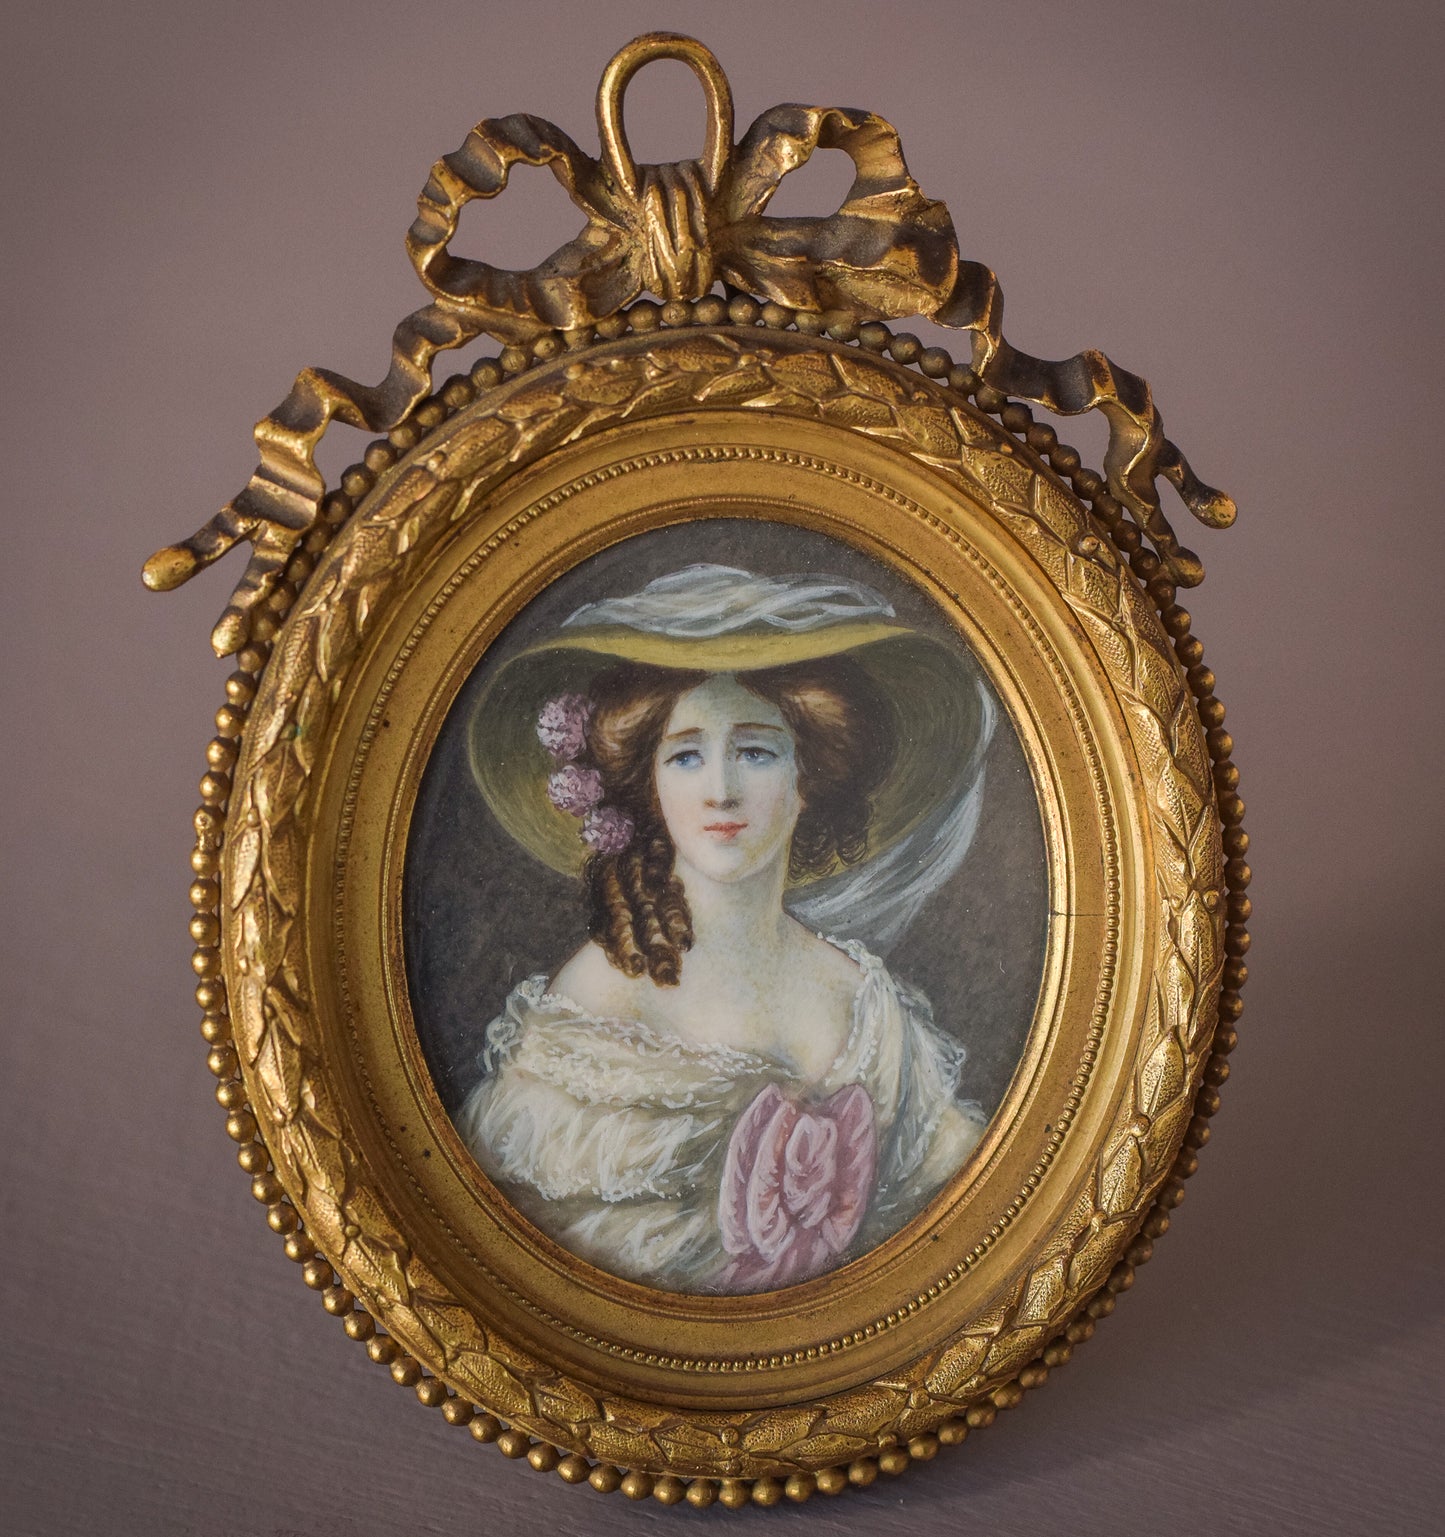 Retrato en miniatura antiguo original de una dama en un marco de bronce